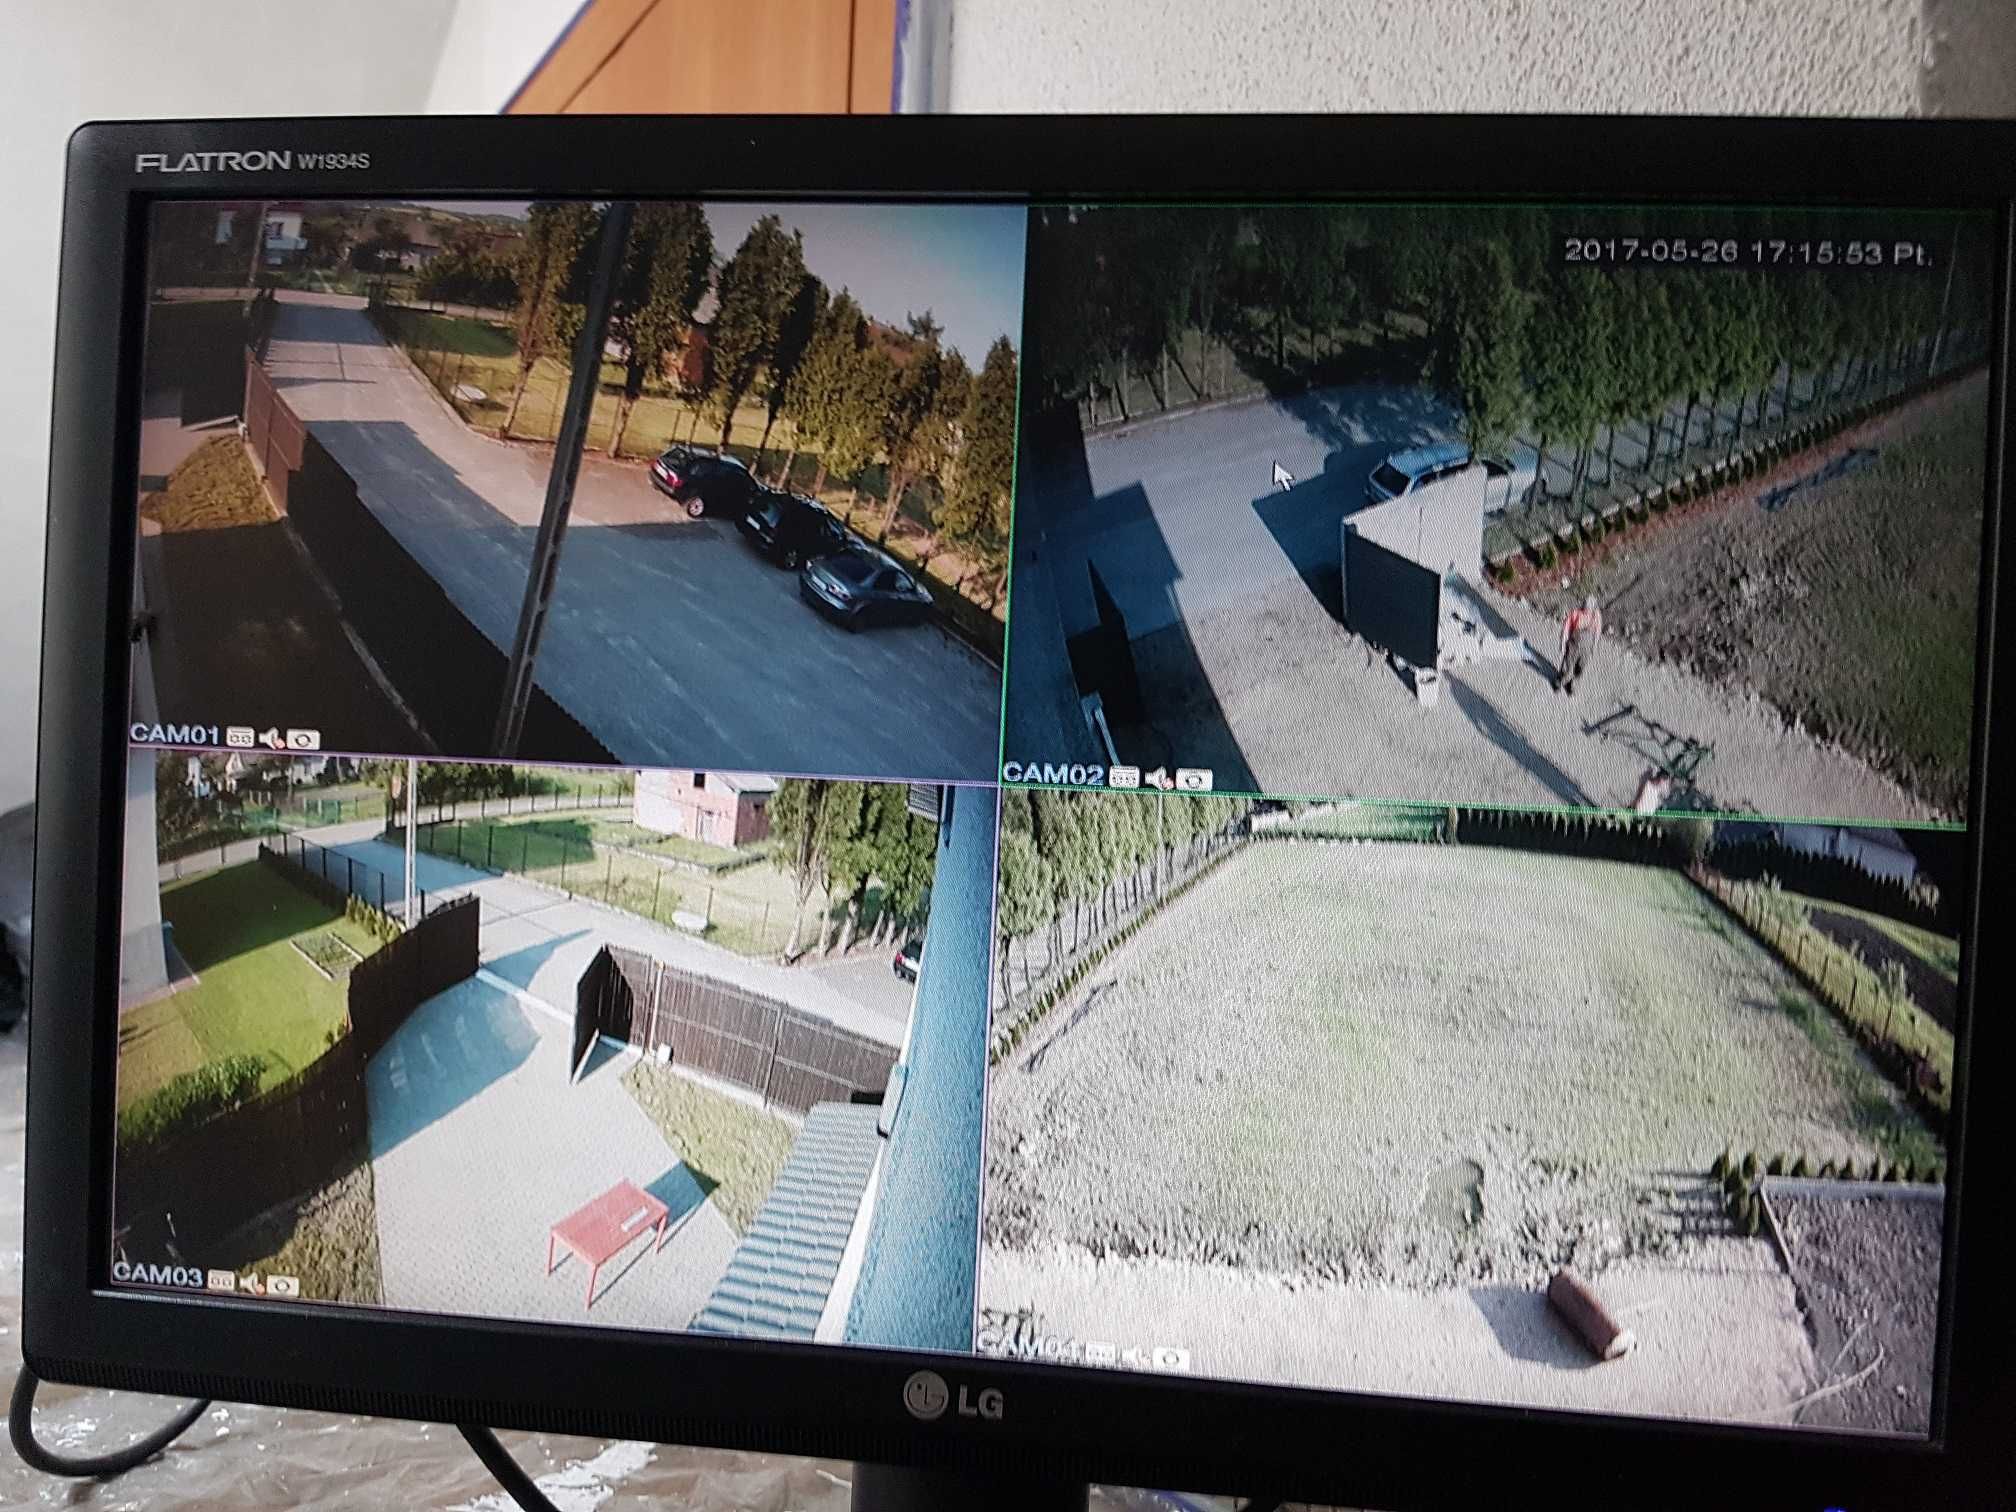 Montaż i instalacja kamer, serwis monitoringu, podgląd w smartfonie